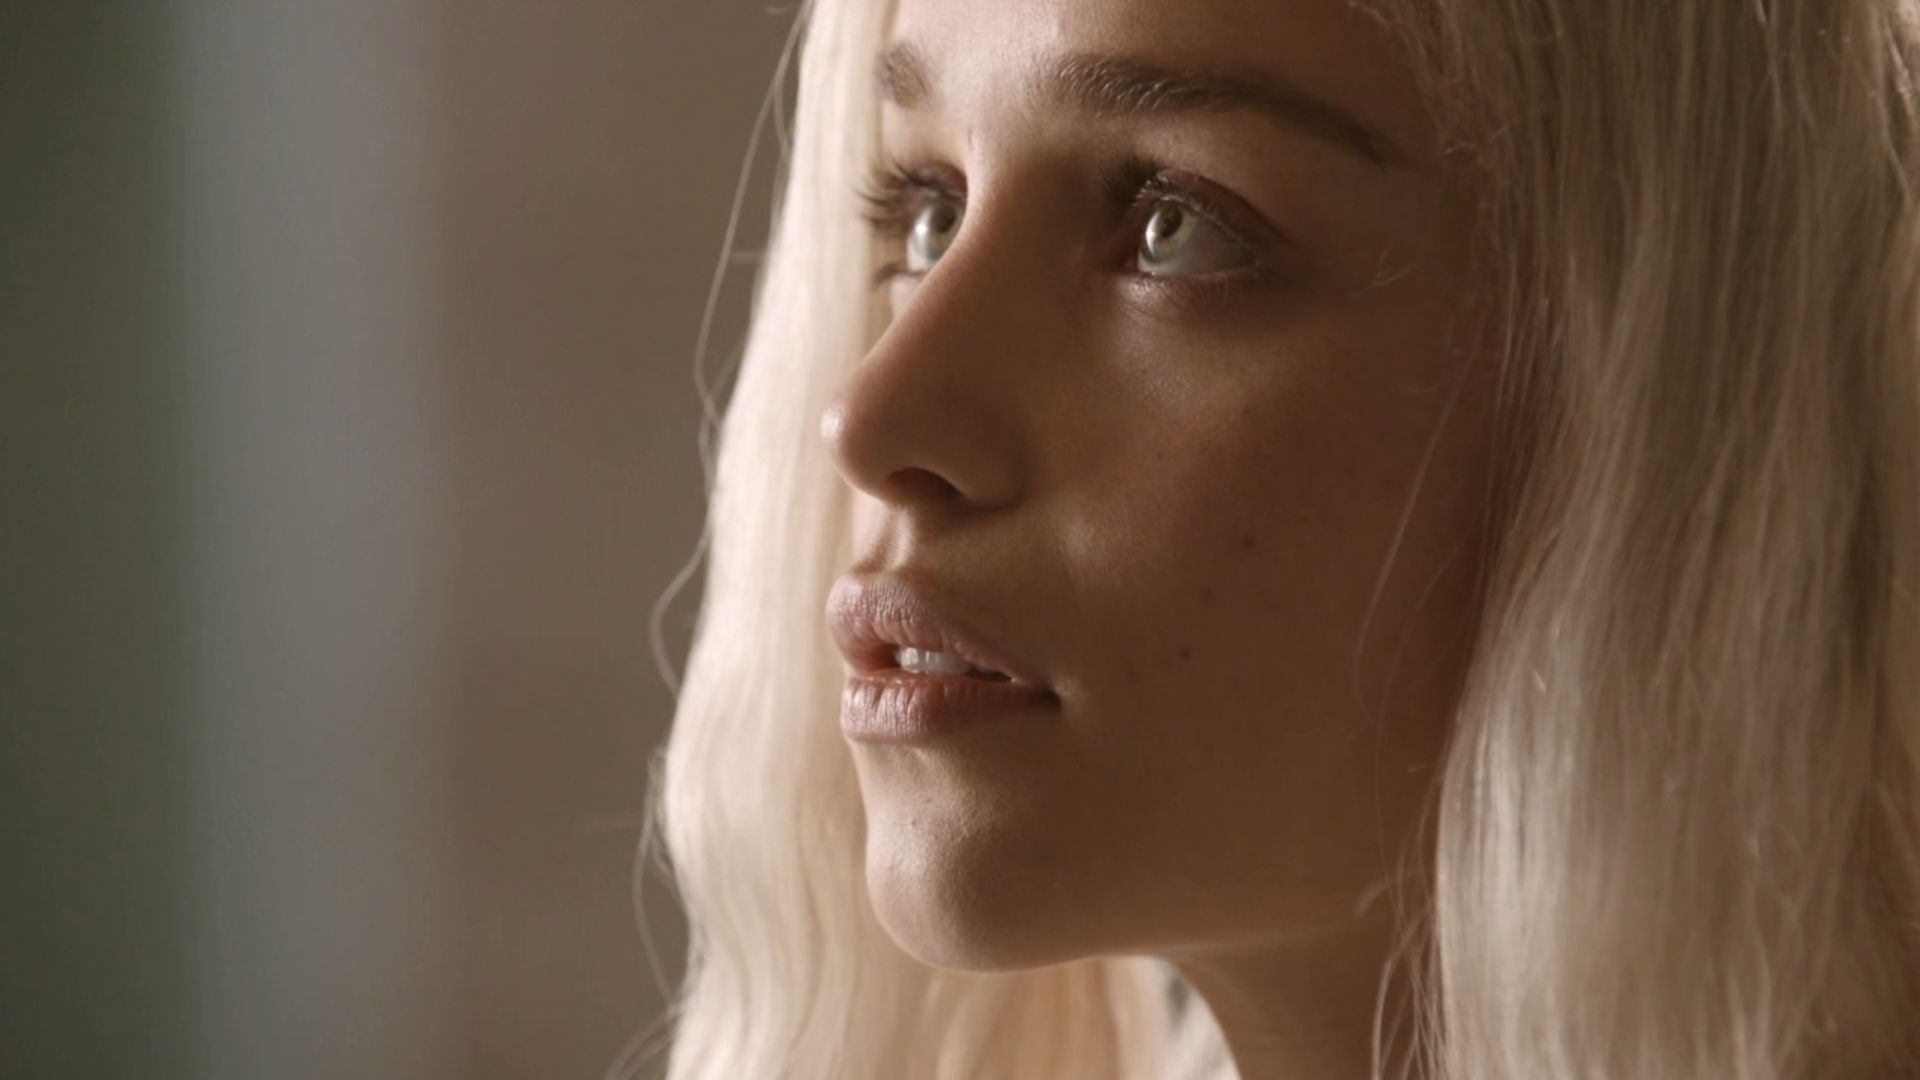 Descarga gratuita de fondo de pantalla para móvil de Juego De Tronos, Series De Televisión, Daenerys Targaryen, Emilia Clarke.